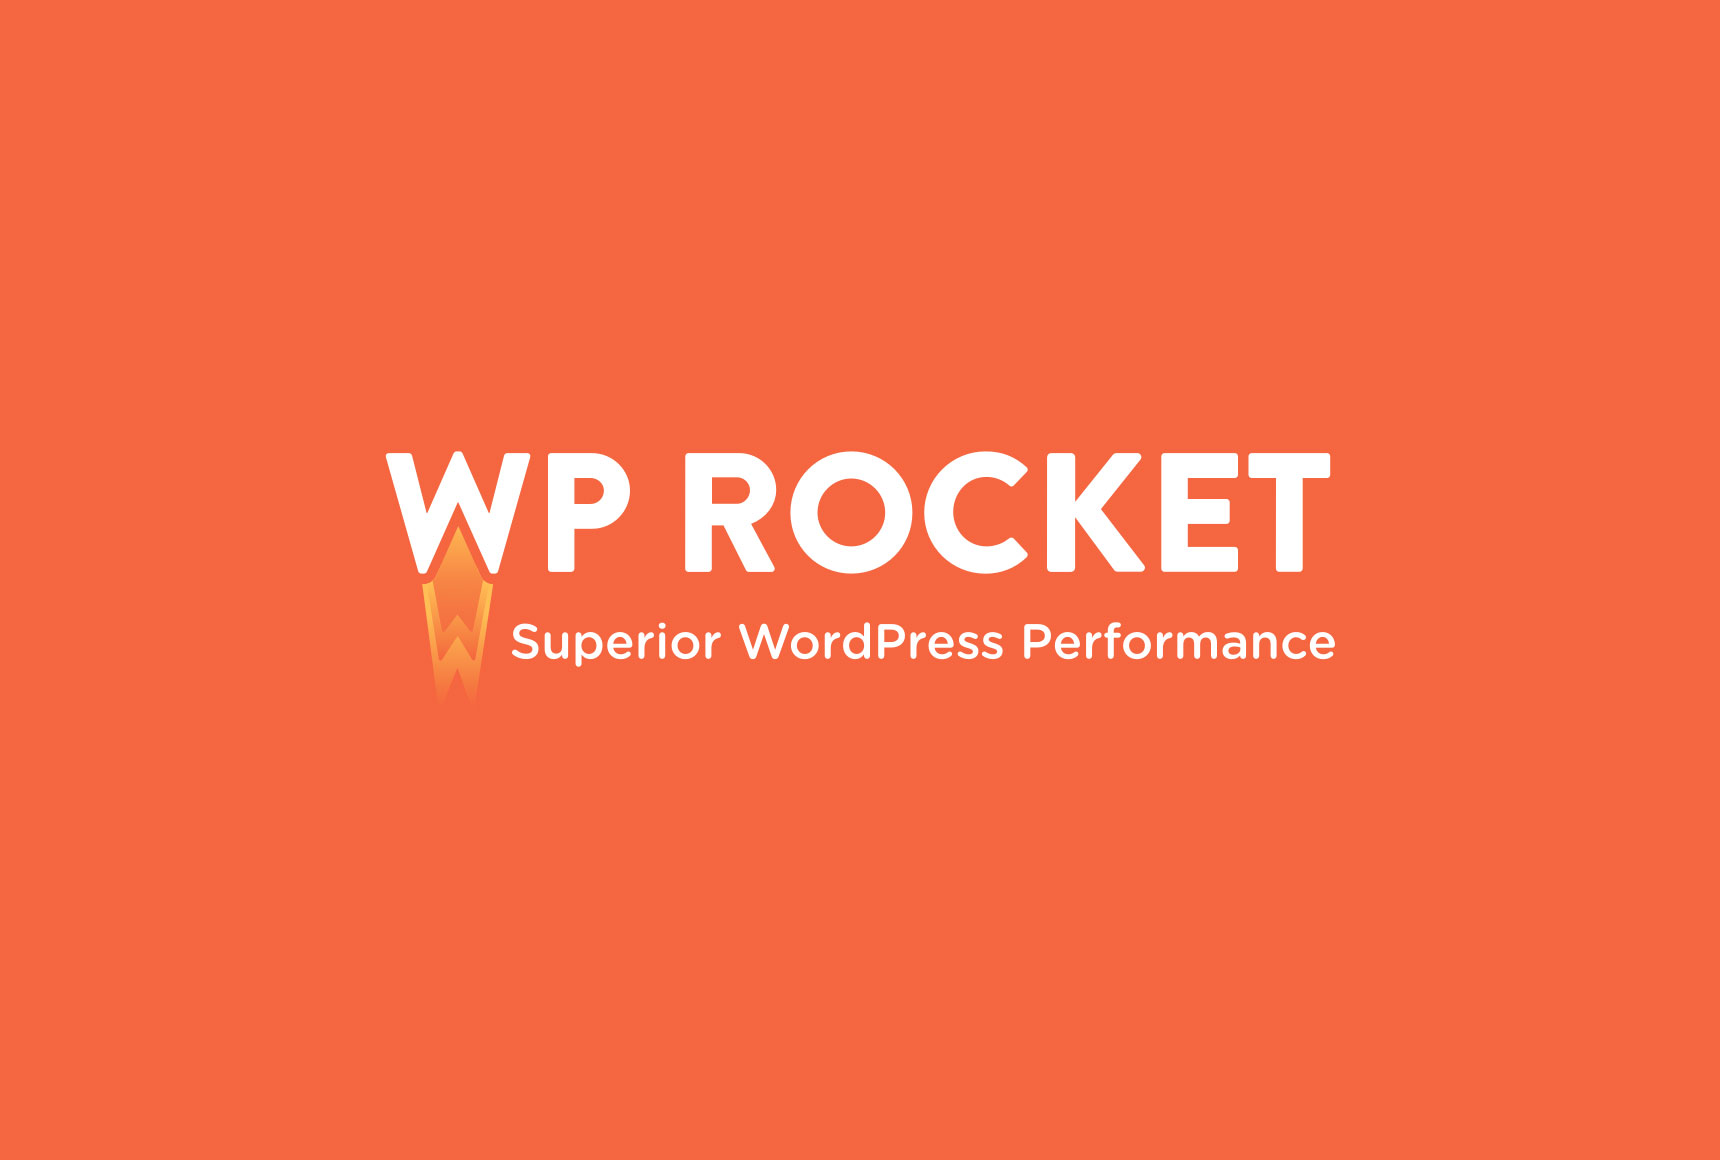 WP Rocket masthead image